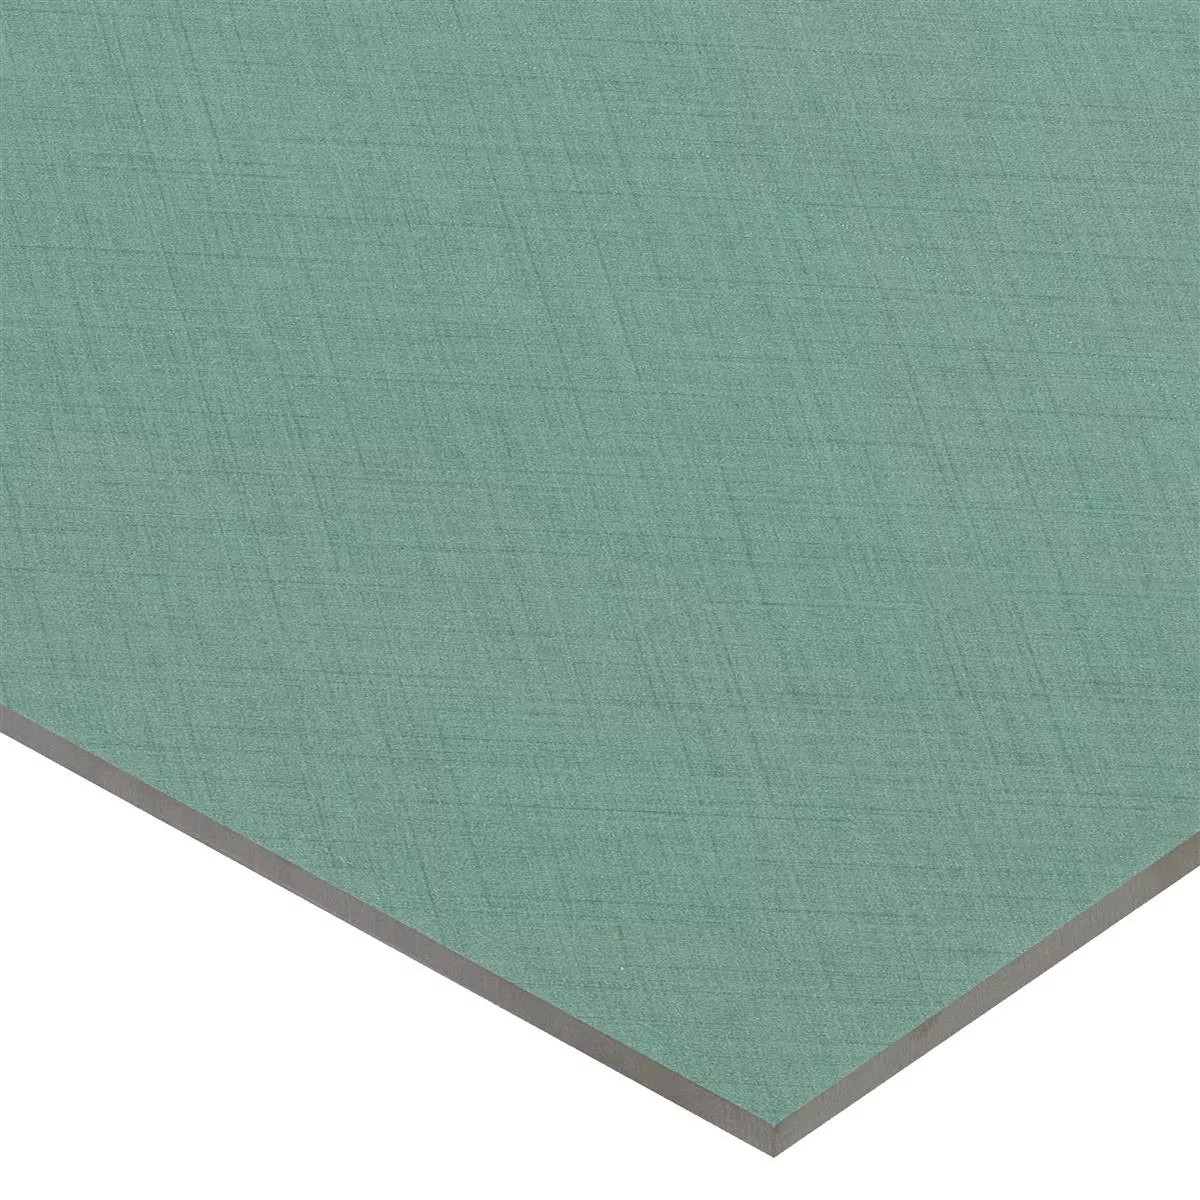 Sample Floor Tiles Flowerfield 18,5x18,5cm Green Basic Tile